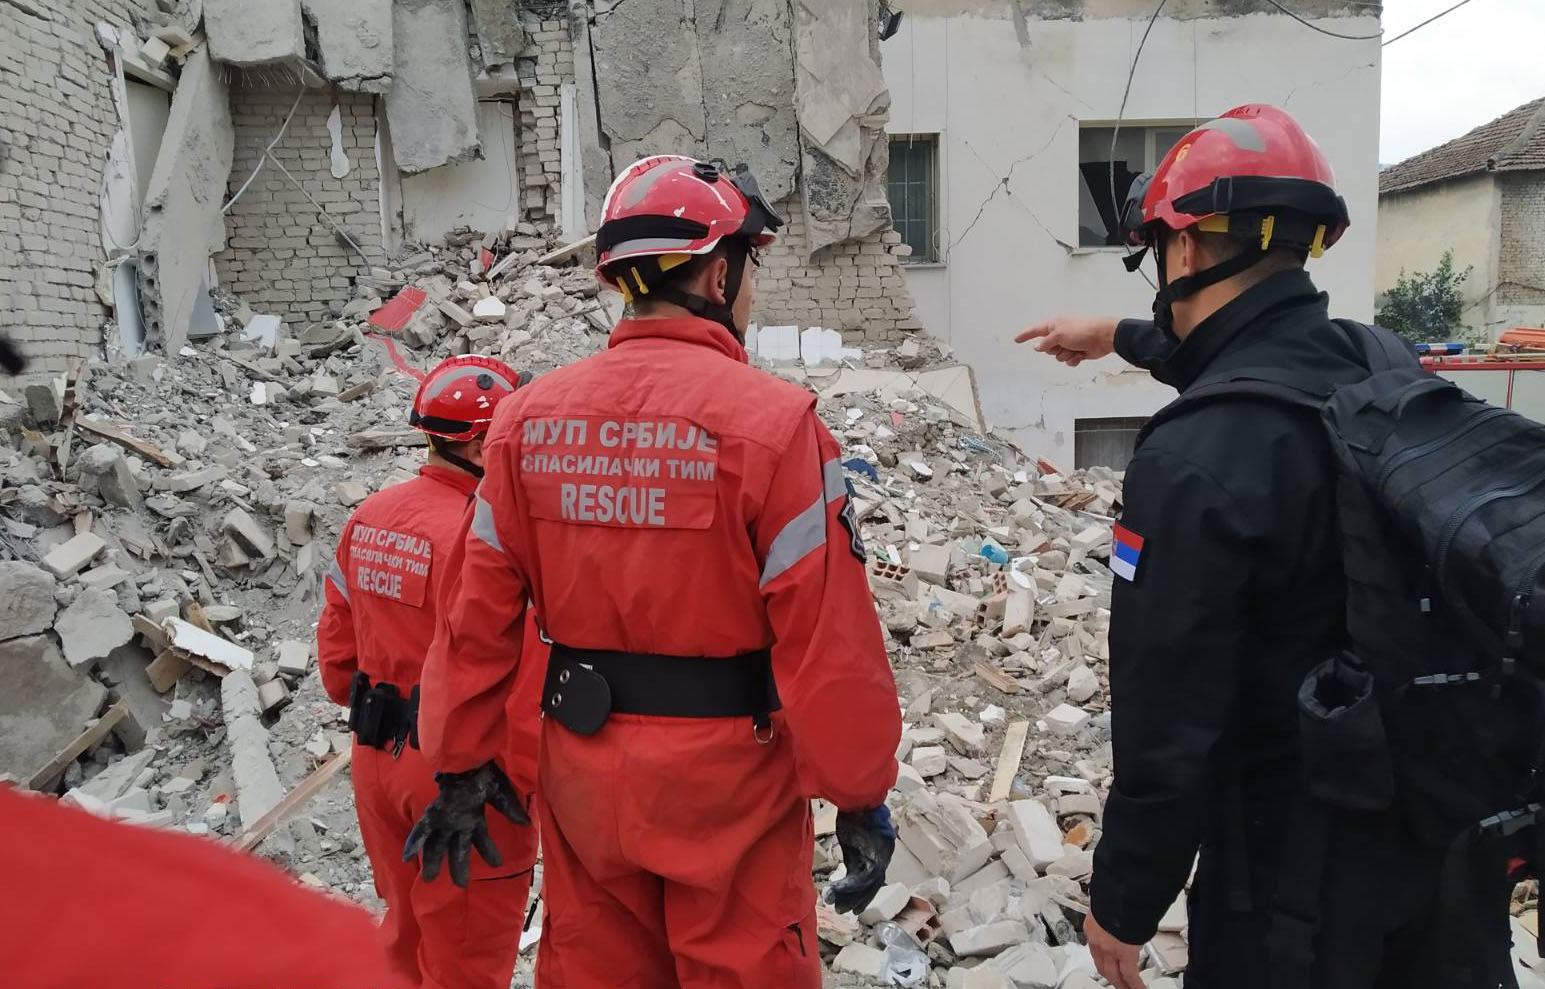 Српски ватрогасци-спасиоци ангажовани на претрази терена и спасавању угроженог становништва у Албанији